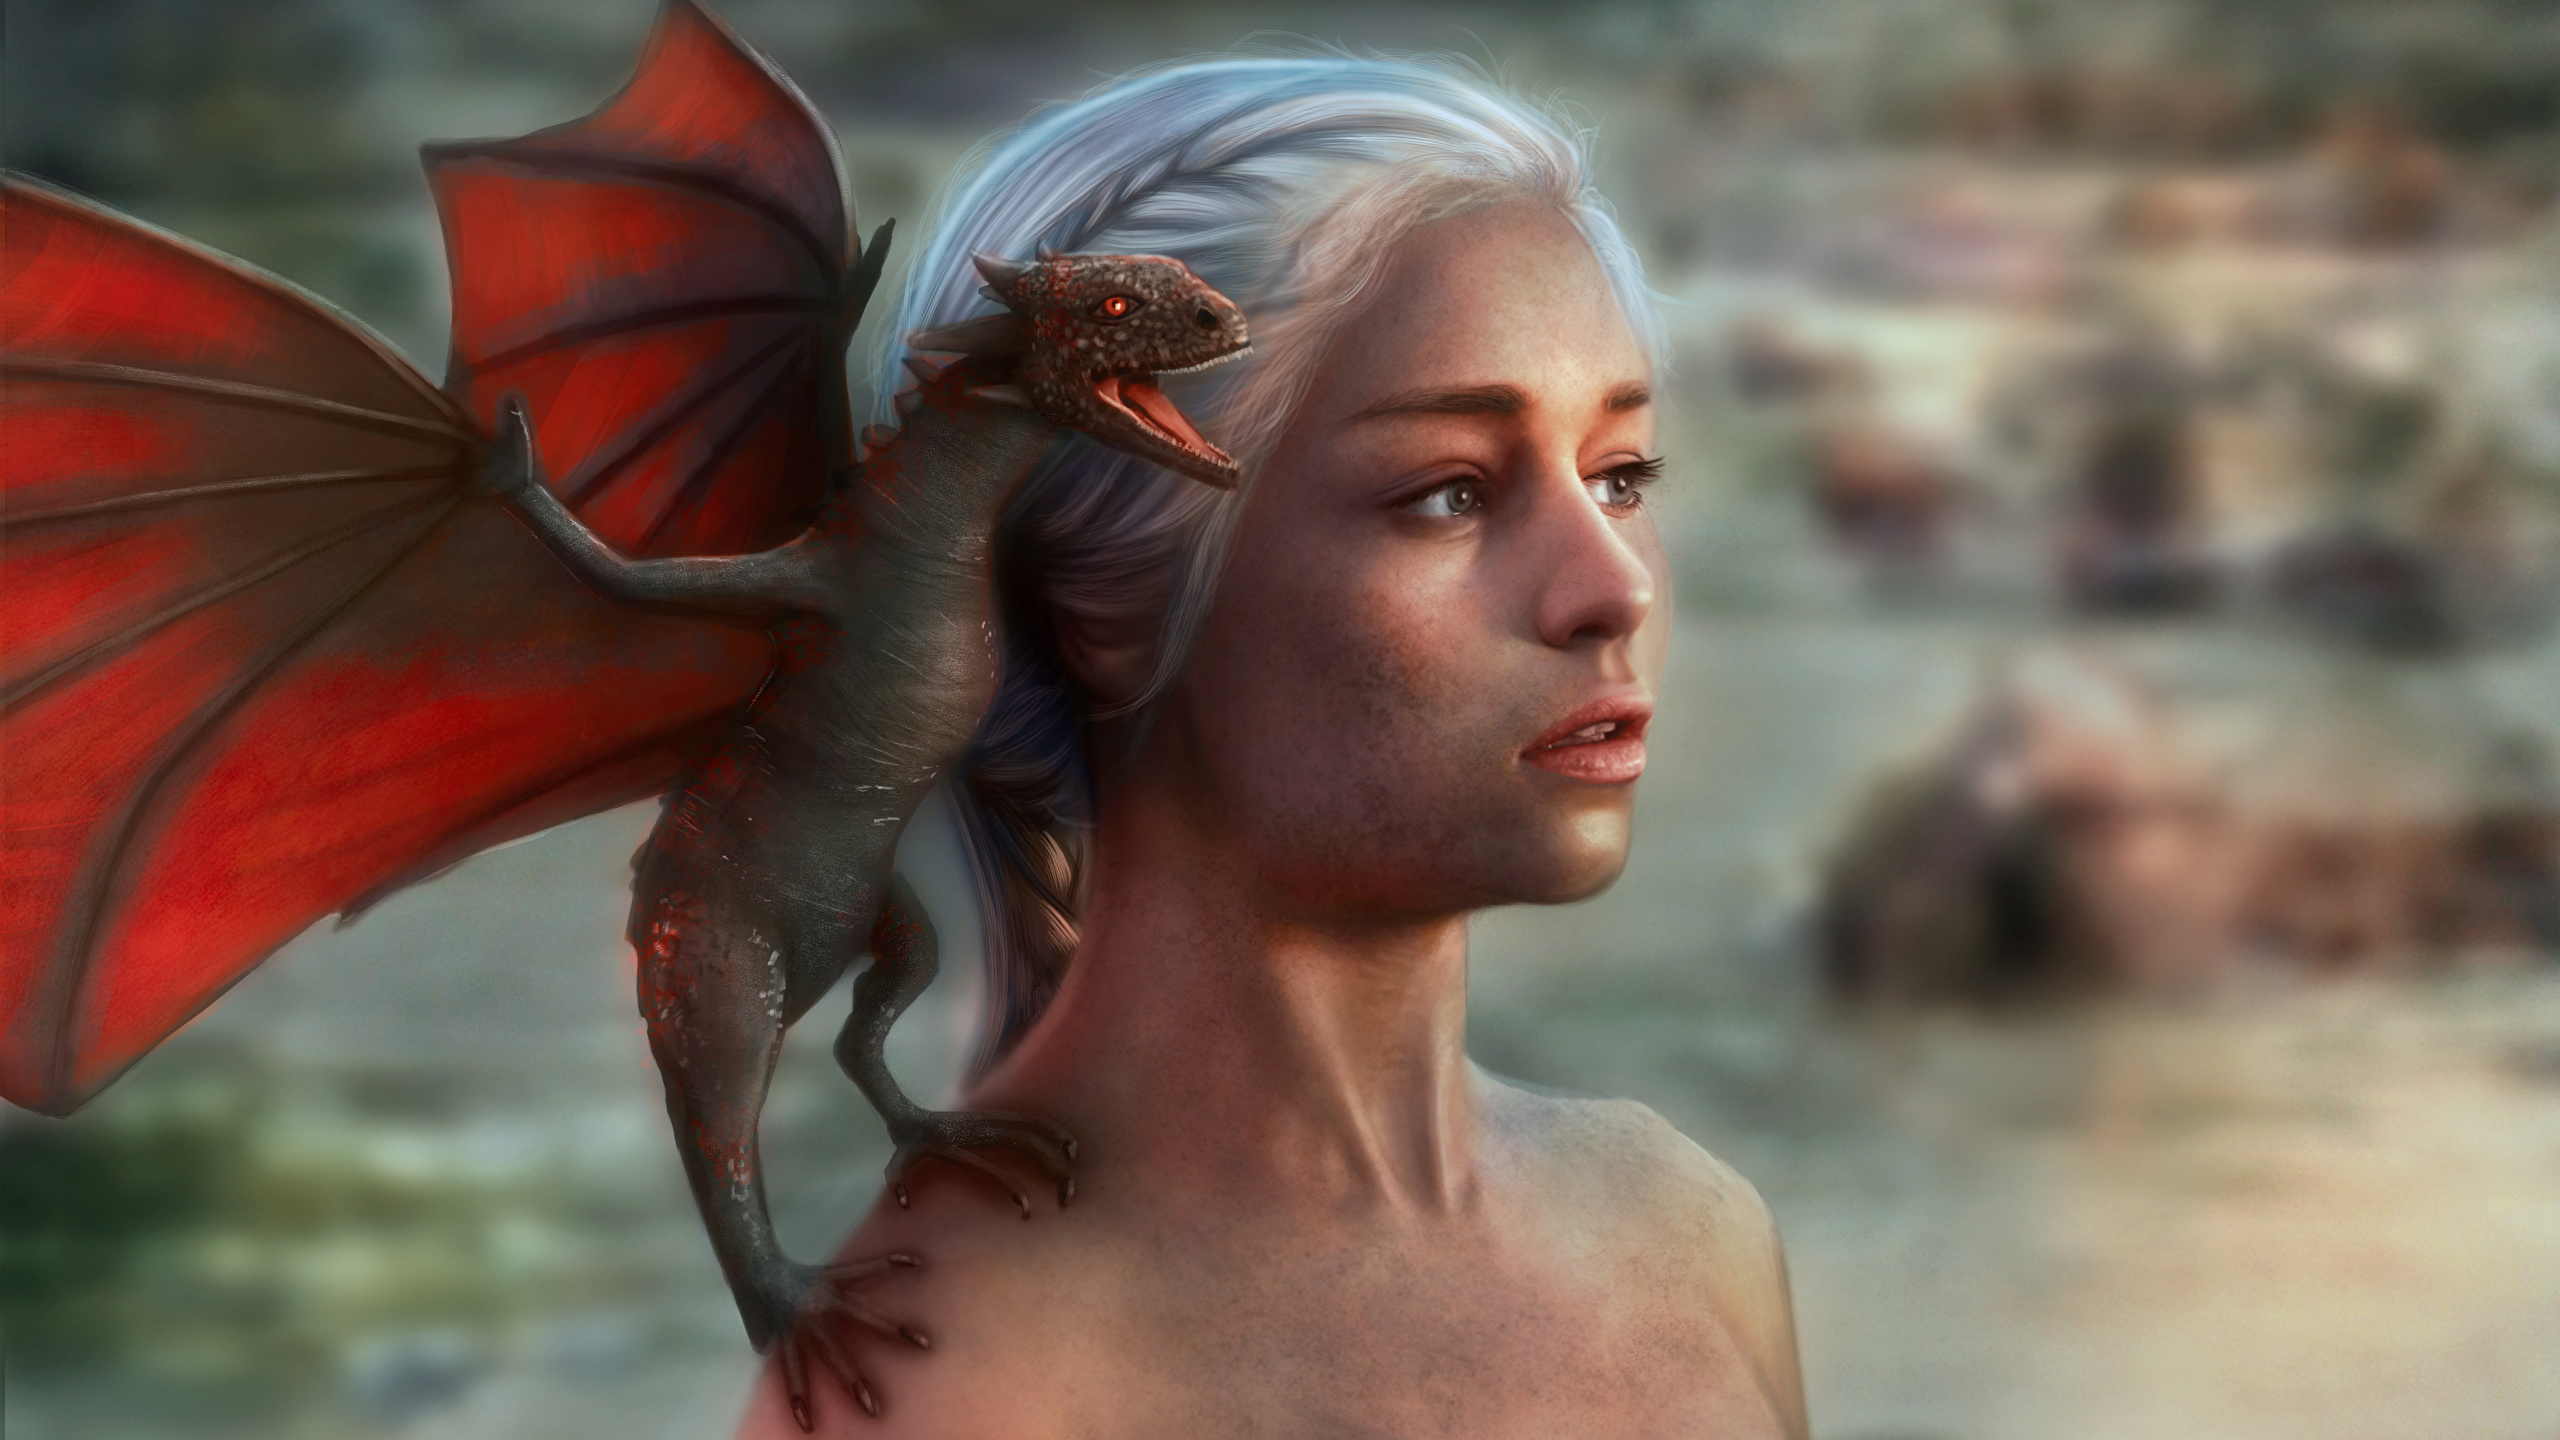 壁紙 2560x1440 ゲーム オブ スローンズ Daenerys Targaryen ドラゴン エミリア クラーク ブロンドの女の子 美しい 映画 少女 ファンタジー ダウンロード 写真